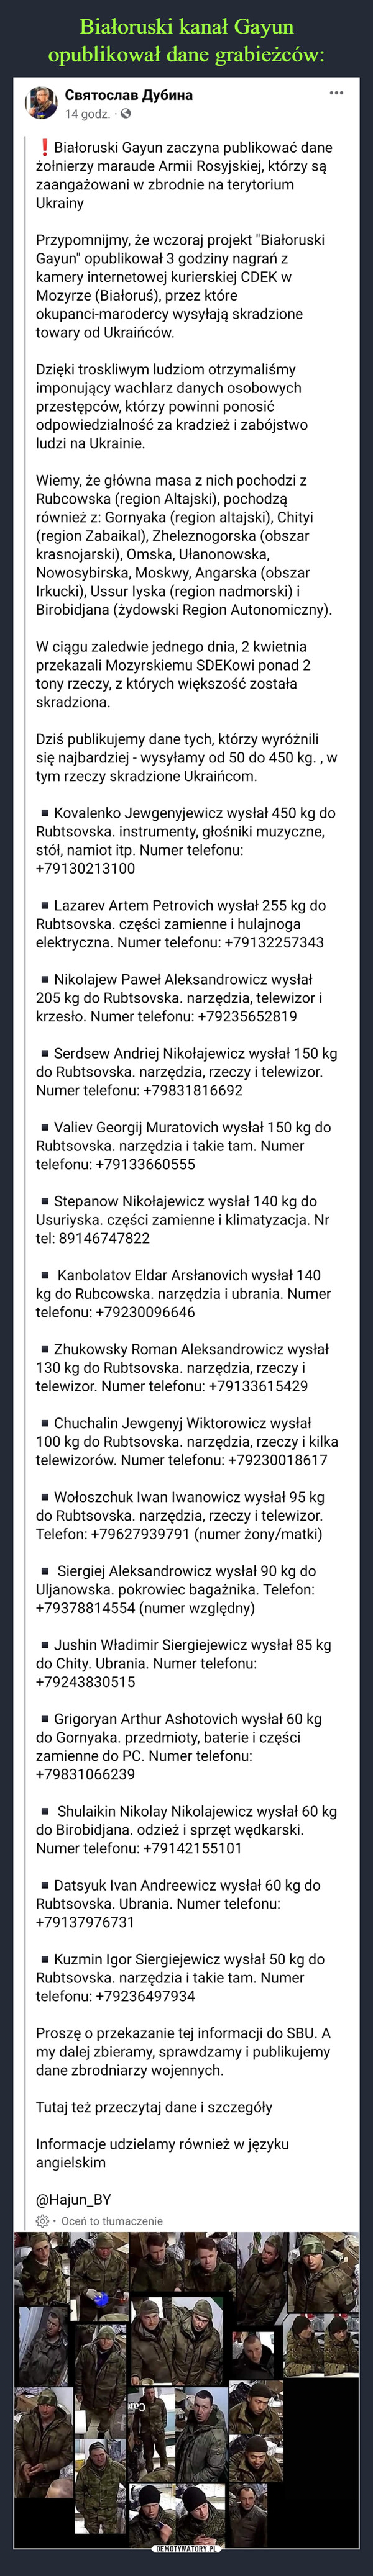  –  Białoruski Gayun zaczyna publikować dane żołnierzy maraude Armii Rosyjskiej, którzy są zaangażowani w zbrodnie na terytorium UkrainyPrzypomnijmy, że wczoraj projekt "Białoruski Gayun" opublikował 3 godziny nagrań z kamery internetowej kurierskiej CDEK w Mozyrze (Białoruś), przez które okupanci-marodercy wysyłają skradzione towary od Ukraińców.Dzięki troskliwym ludziom otrzymaliśmy imponujący wachlarz danych osobowych przestępców, którzy powinni ponosić odpowiedzialność za kradzież i zabójstwo ludzi na Ukrainie.Wiemy, że główna masa z nich pochodzi z Rubcowska (region Altajski), pochodzą również z: Gornyaka (region altajski), Chityi (region Zabaikal), Zheleznogorska (obszar krasnojarski), Omska, Ułanonowska, Nowosybirska, Moskwy, Angarska (obszar Irkucki), Ussur Iyska (region nadmorski) i Birobidjana (żydowski Region Autonomiczny).W ciągu zaledwie jednego dnia, 2 kwietnia przekazali Mozyrskiemu SDEKowi ponad 2 tony rzeczy, z których większość została skradziona.Dziś publikujemy dane tych, którzy wyróżnili się najbardziej - wysyłamy od 50 do 450 kg. , w tym rzeczy skradzione Ukraińcom.▪️Kovalenko Jewgenyjewicz wysłał 450 kg do Rubtsovska. instrumenty, głośniki muzyczne, stół, namiot itp. Numer telefonu: +79130213100▪️Lazarev Artem Petrovich wysłał 255 kg do Rubtsovska. części zamienne i hulajnoga elektryczna. Numer telefonu: +79132257343▪️Nikolajew Paweł Aleksandrowicz wysłał 205 kg do Rubtsovska. narzędzia, telewizor i krzesło. Numer telefonu: +79235652819▪️Serdsew Andriej Nikołajewicz wysłał 150 kg do Rubtsovska. narzędzia, rzeczy i telewizor. Numer telefonu: +79831816692▪️Valiev Georgij Muratovich wysłał 150 kg do Rubtsovska. narzędzia i takie tam. Numer telefonu: +79133660555▪️Stepanow Nikołajewicz wysłał 140 kg do Usuriyska. części zamienne i klimatyzacja. Nr tel: 89146747822▪️ Kanbolatov Eldar Arsłanovich wysłał 140 kg do Rubcowska. narzędzia i ubrania. Numer telefonu: +79230096646▪️Zhukowsky Roman Aleksandrowicz wysłał 130 kg do Rubtsovska. narzędzia, rzeczy i telewizor. Numer telefonu: +79133615429▪️Chuchalin Jewgenyj Wiktorowicz wysłał 100 kg do Rubtsovska. narzędzia, rzeczy i kilka telewizorów. Numer telefonu: +79230018617▪️Wołoszchuk Iwan Iwanowicz wysłał 95 kg do Rubtsovska. narzędzia, rzeczy i telewizor. Telefon: +79627939791 (numer żony/matki)▪️ Siergiej Aleksandrowicz wysłał 90 kg do Uljanowska. pokrowiec bagażnika. Telefon: +79378814554 (numer względny)▪️Jushin Władimir Siergiejewicz wysłał 85 kg do Chity. Ubrania. Numer telefonu: +79243830515▪️Grigoryan Arthur Ashotovich wysłał 60 kg do Gornyaka. przedmioty, baterie i części zamienne do PC. Numer telefonu: +79831066239▪️ Shulaikin Nikolay Nikolajewicz wysłał 60 kg do Birobidjana. odzież i sprzęt wędkarski. Numer telefonu: +79142155101▪️Datsyuk Ivan Andreewicz wysłał 60 kg do Rubtsovska. Ubrania. Numer telefonu: +79137976731▪️Kuzmin Igor Siergiejewicz wysłał 50 kg do Rubtsovska. narzędzia i takie tam. Numer telefonu: +79236497934Proszę o przekazanie tej informacji do SBU. A my dalej zbieramy, sprawdzamy i publikujemy dane zbrodniarzy wojennych.Tutaj też przeczytaj dane i szczegółyInformacje udzielamy również w języku angielskim@Hajun_BY